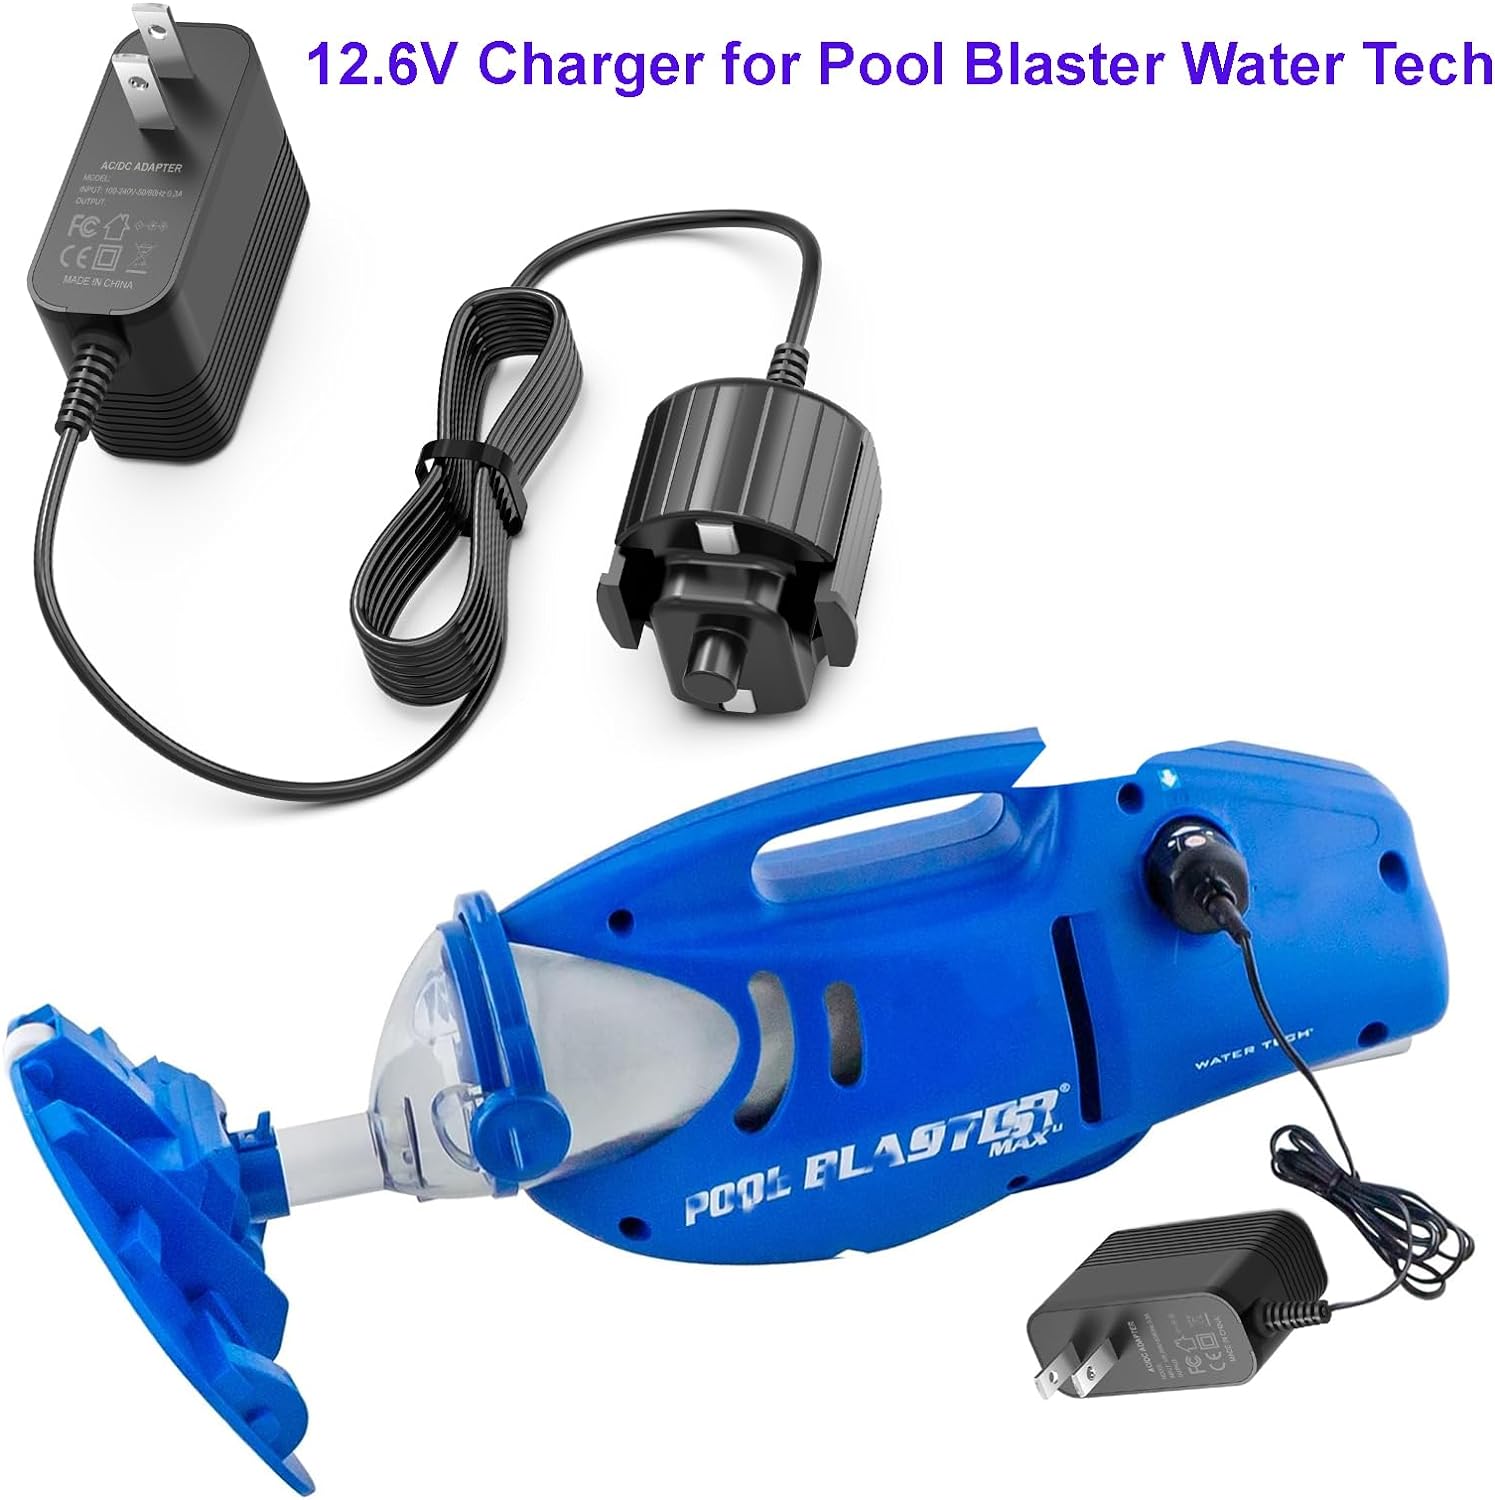 Charger for Pool Blaster Water Tech Compatible with Max Li, Max Li HD, Max Li CG, Millenium Li, iVAC 360 Li and Volt FX-